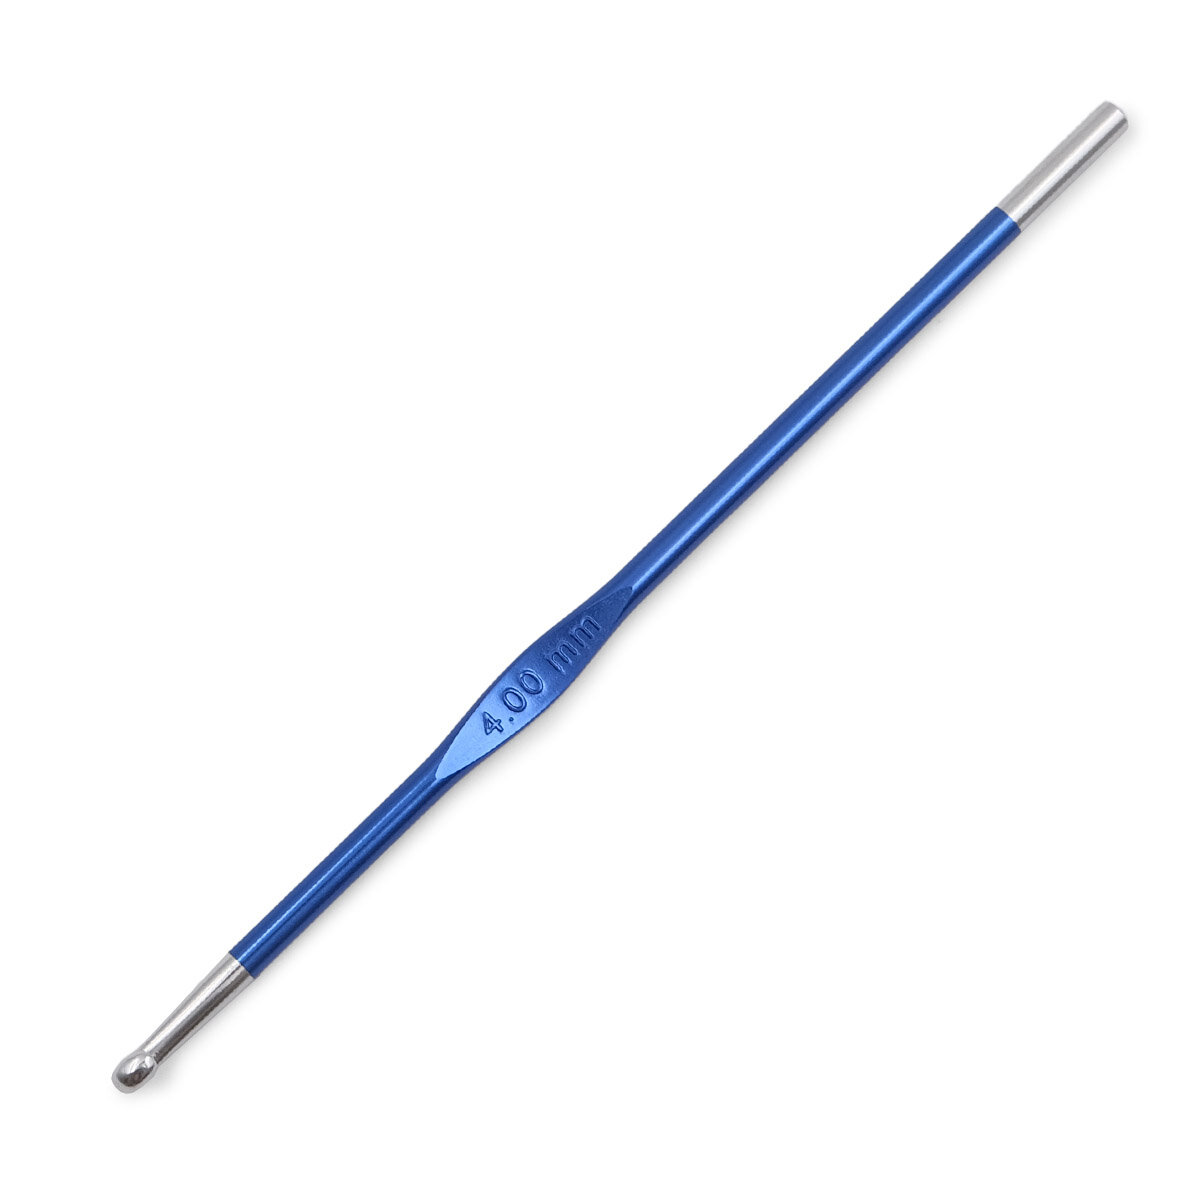 Крючок для вязания Zing 4мм, алюминий, сапфир (темно-синий), KnitPro